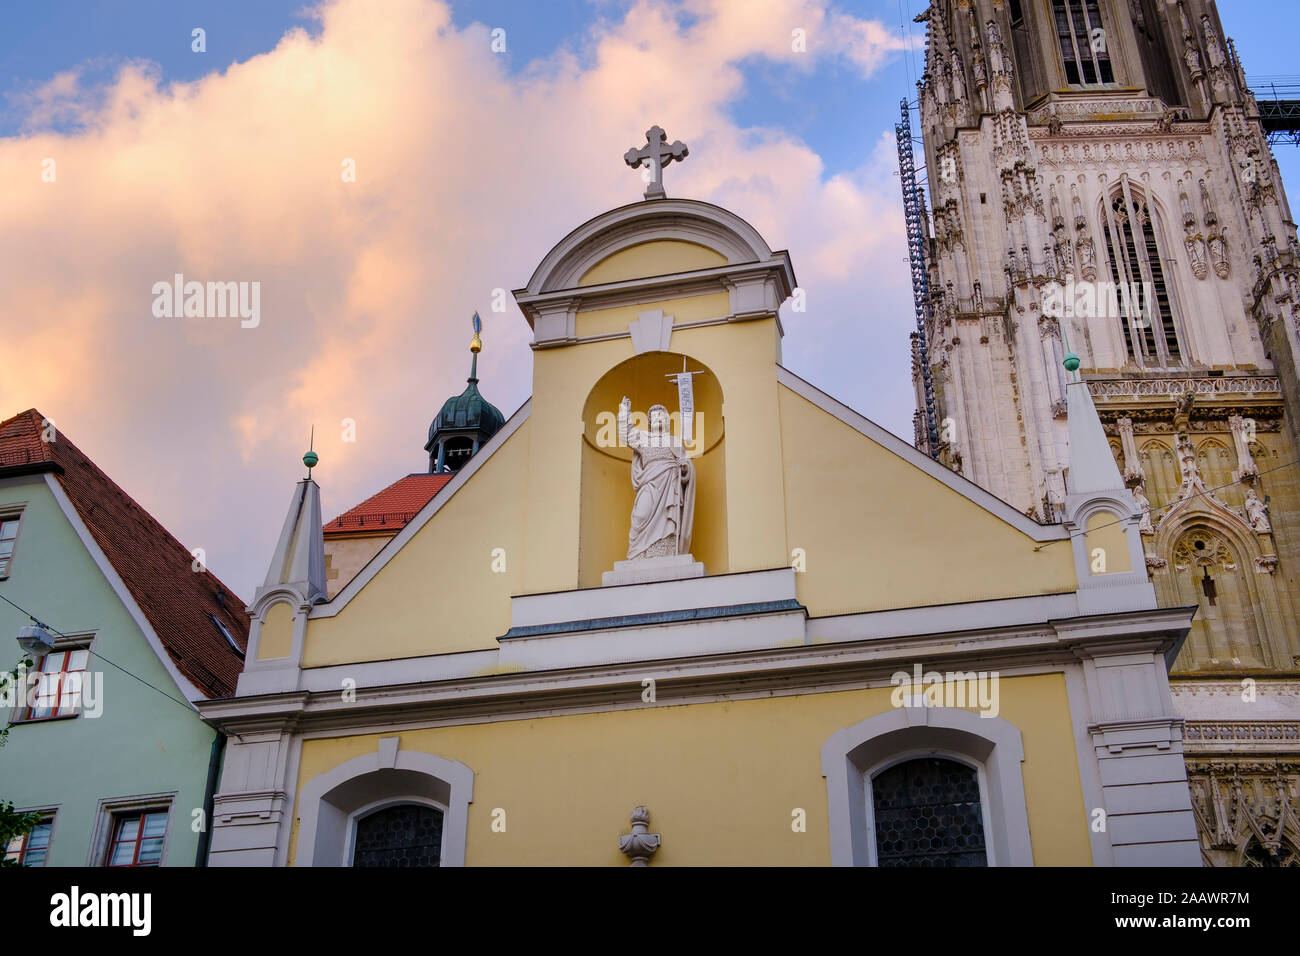 Chiesa collegiata di Sankt Johann contro il cielo nuvoloso, Regensburg, Alto Palatinato, Baviera, Germania Foto Stock